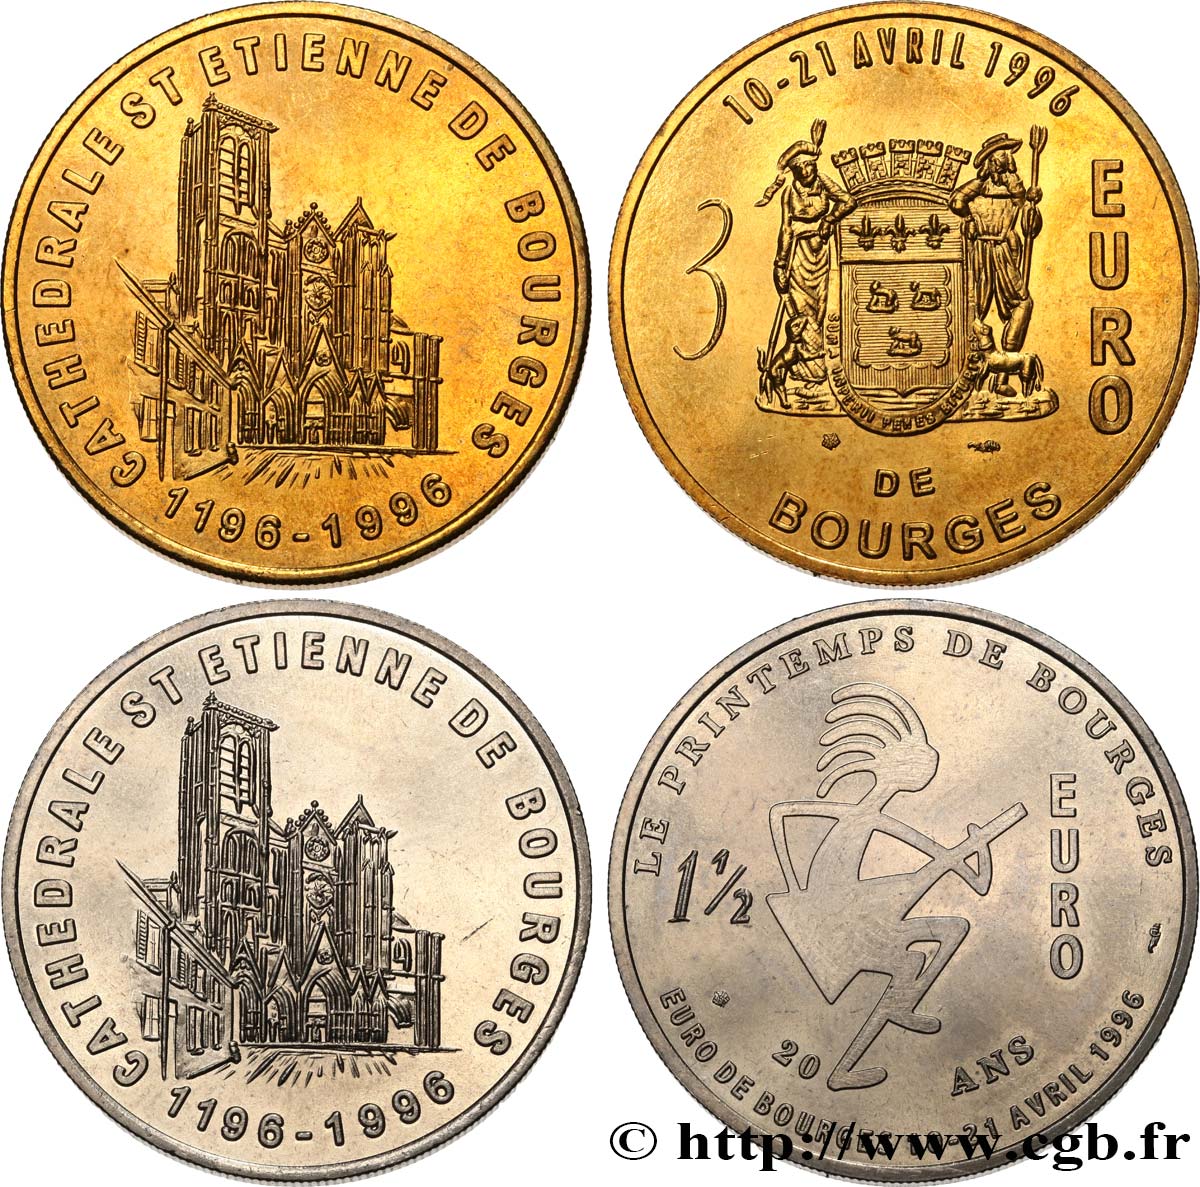 FRANKREICH Lot 1 Euro 1/2 et 3 Euro de Bourges (10 - 21 avril 1996) 1996